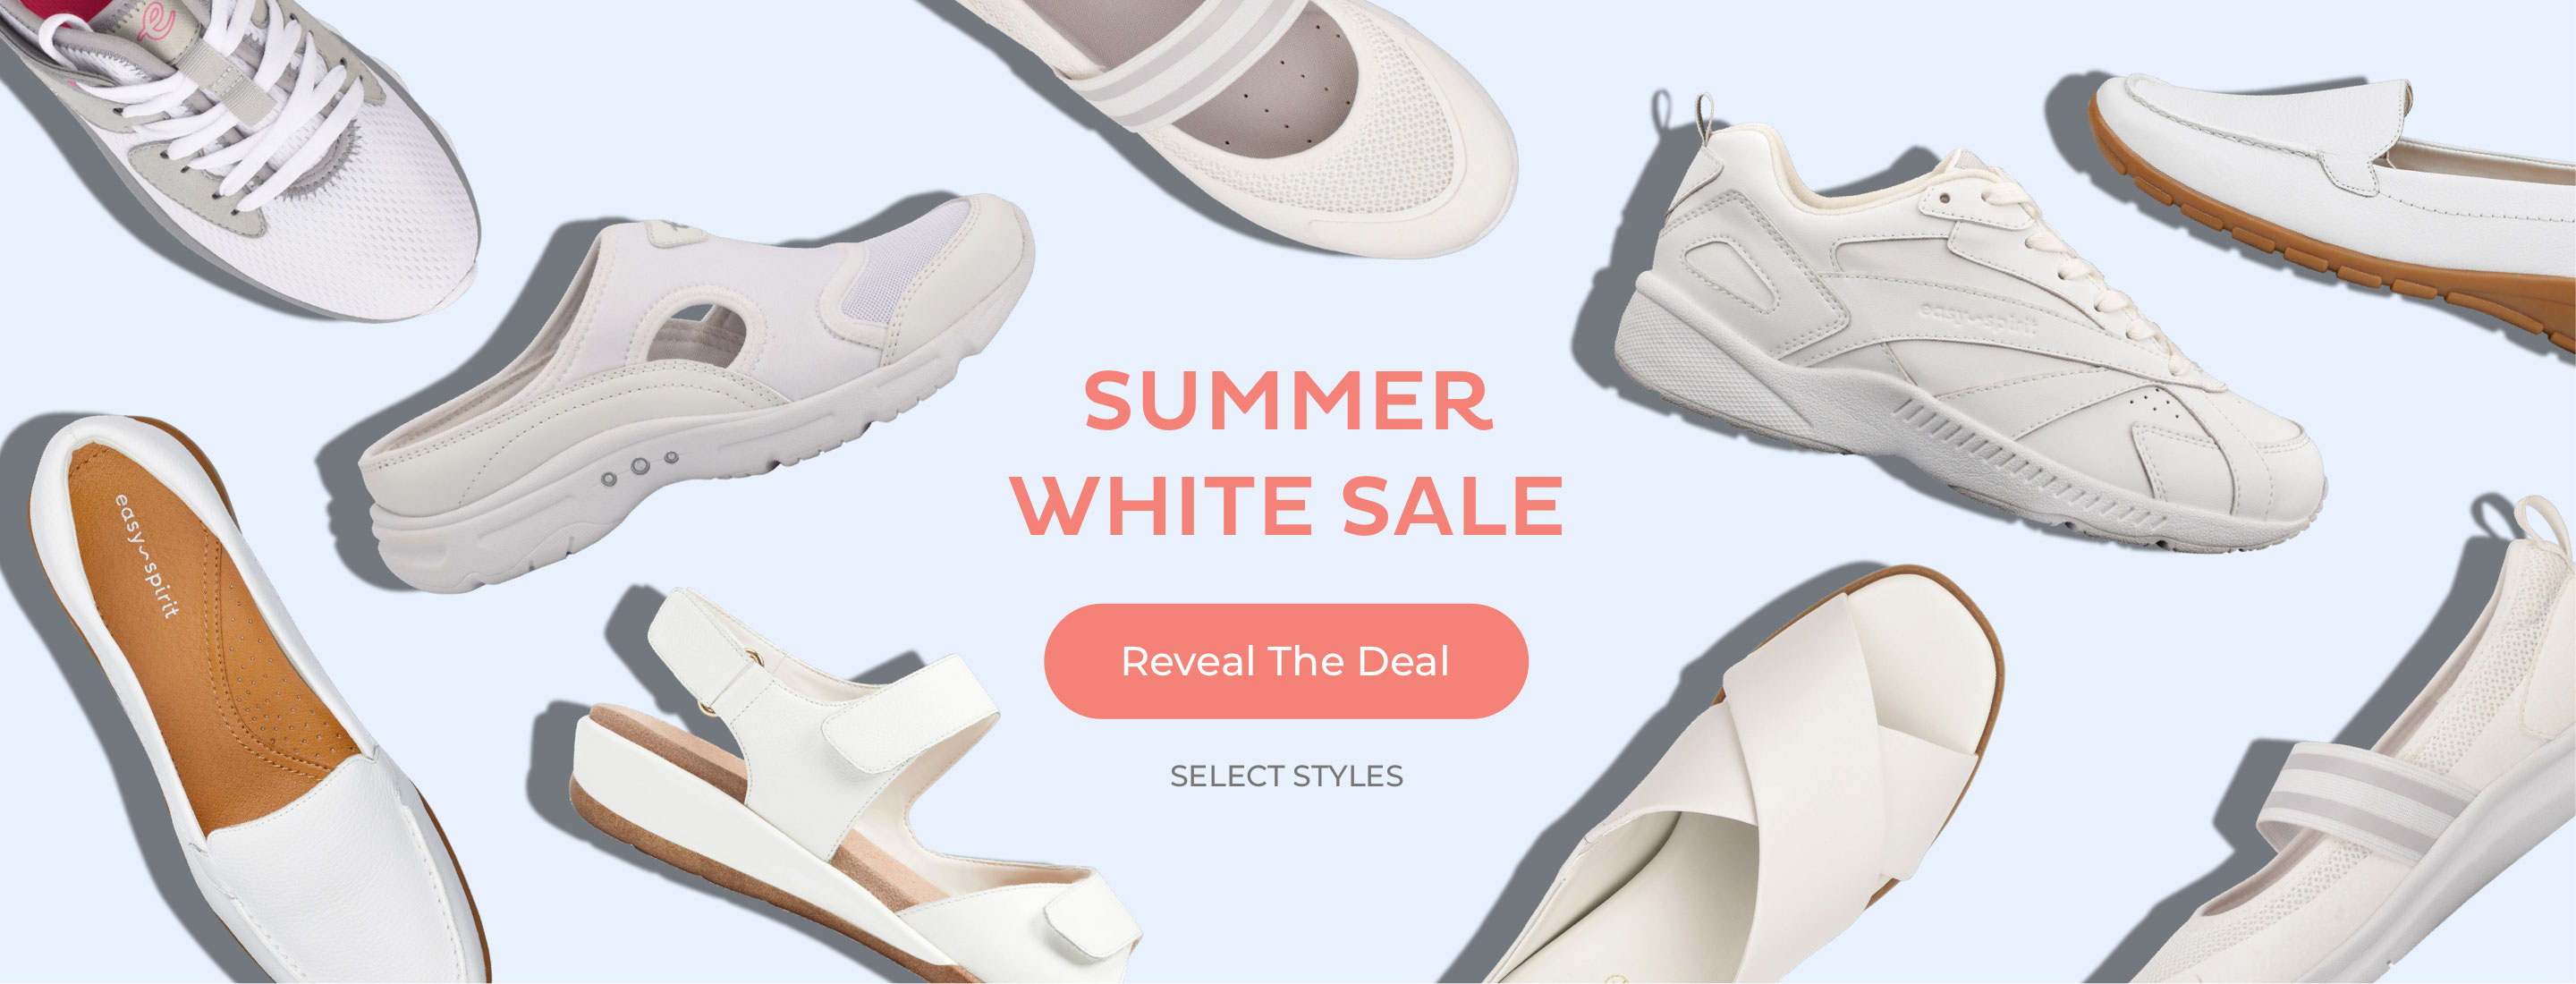 Summer White Sale